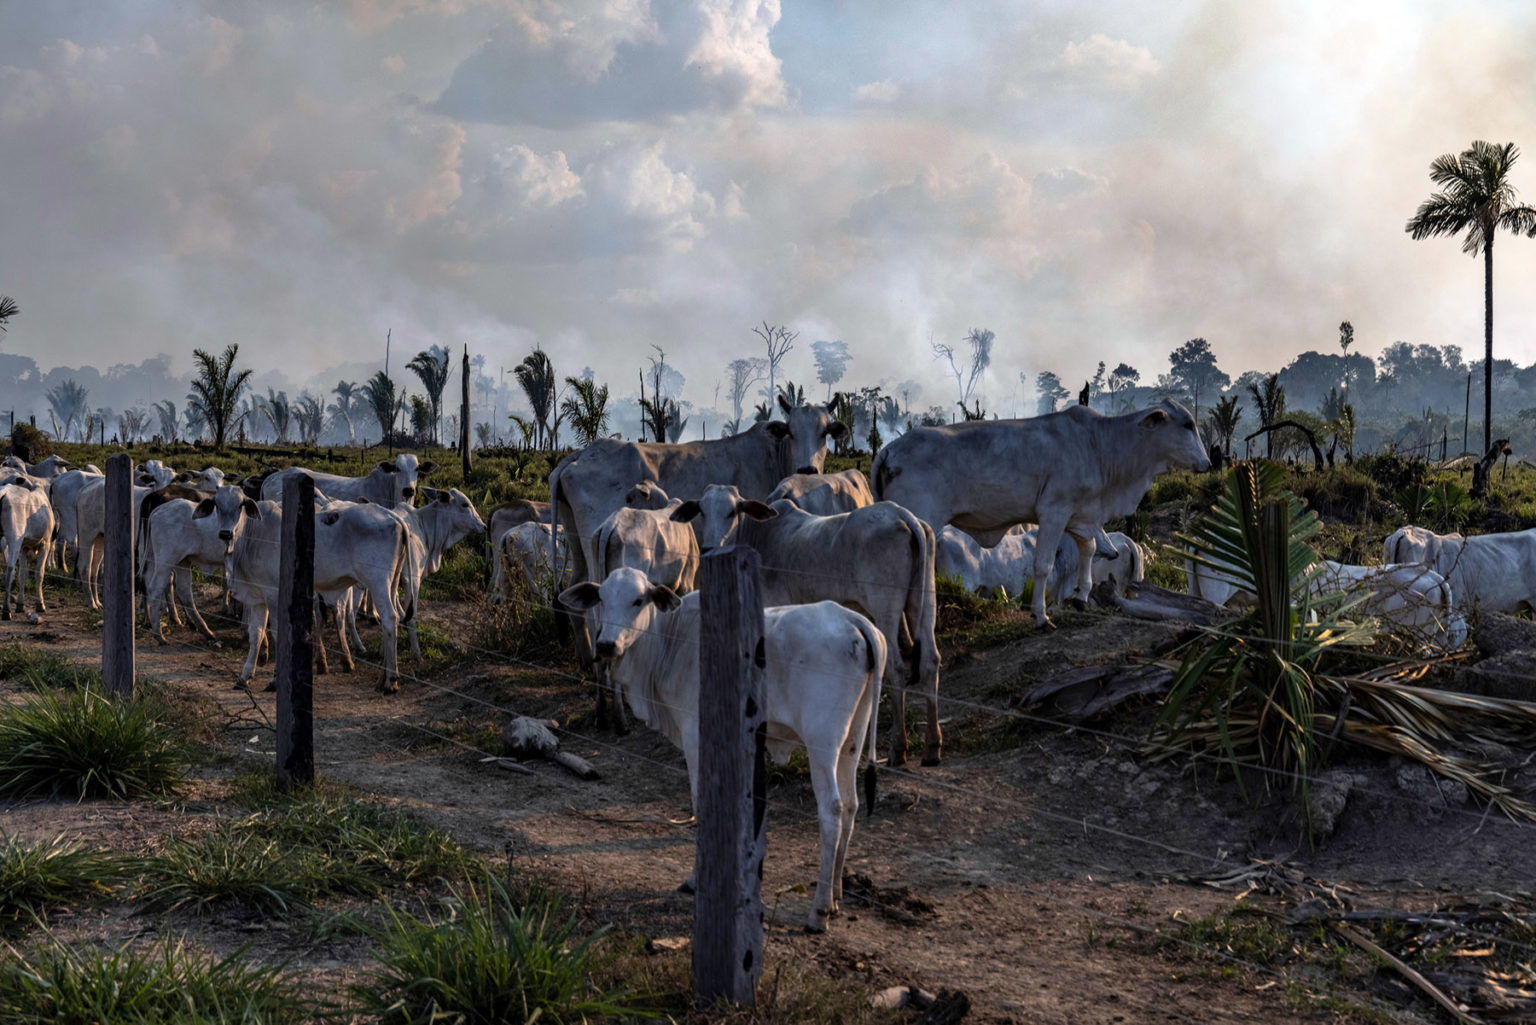 Ganado en una zona ganadera, junto a una zona recientemente deforestada y quemada, en Candeias do Jamari, estado de Rondônia, Brasil. Foto: Victor Moriyama / Amazônia em Chamas 